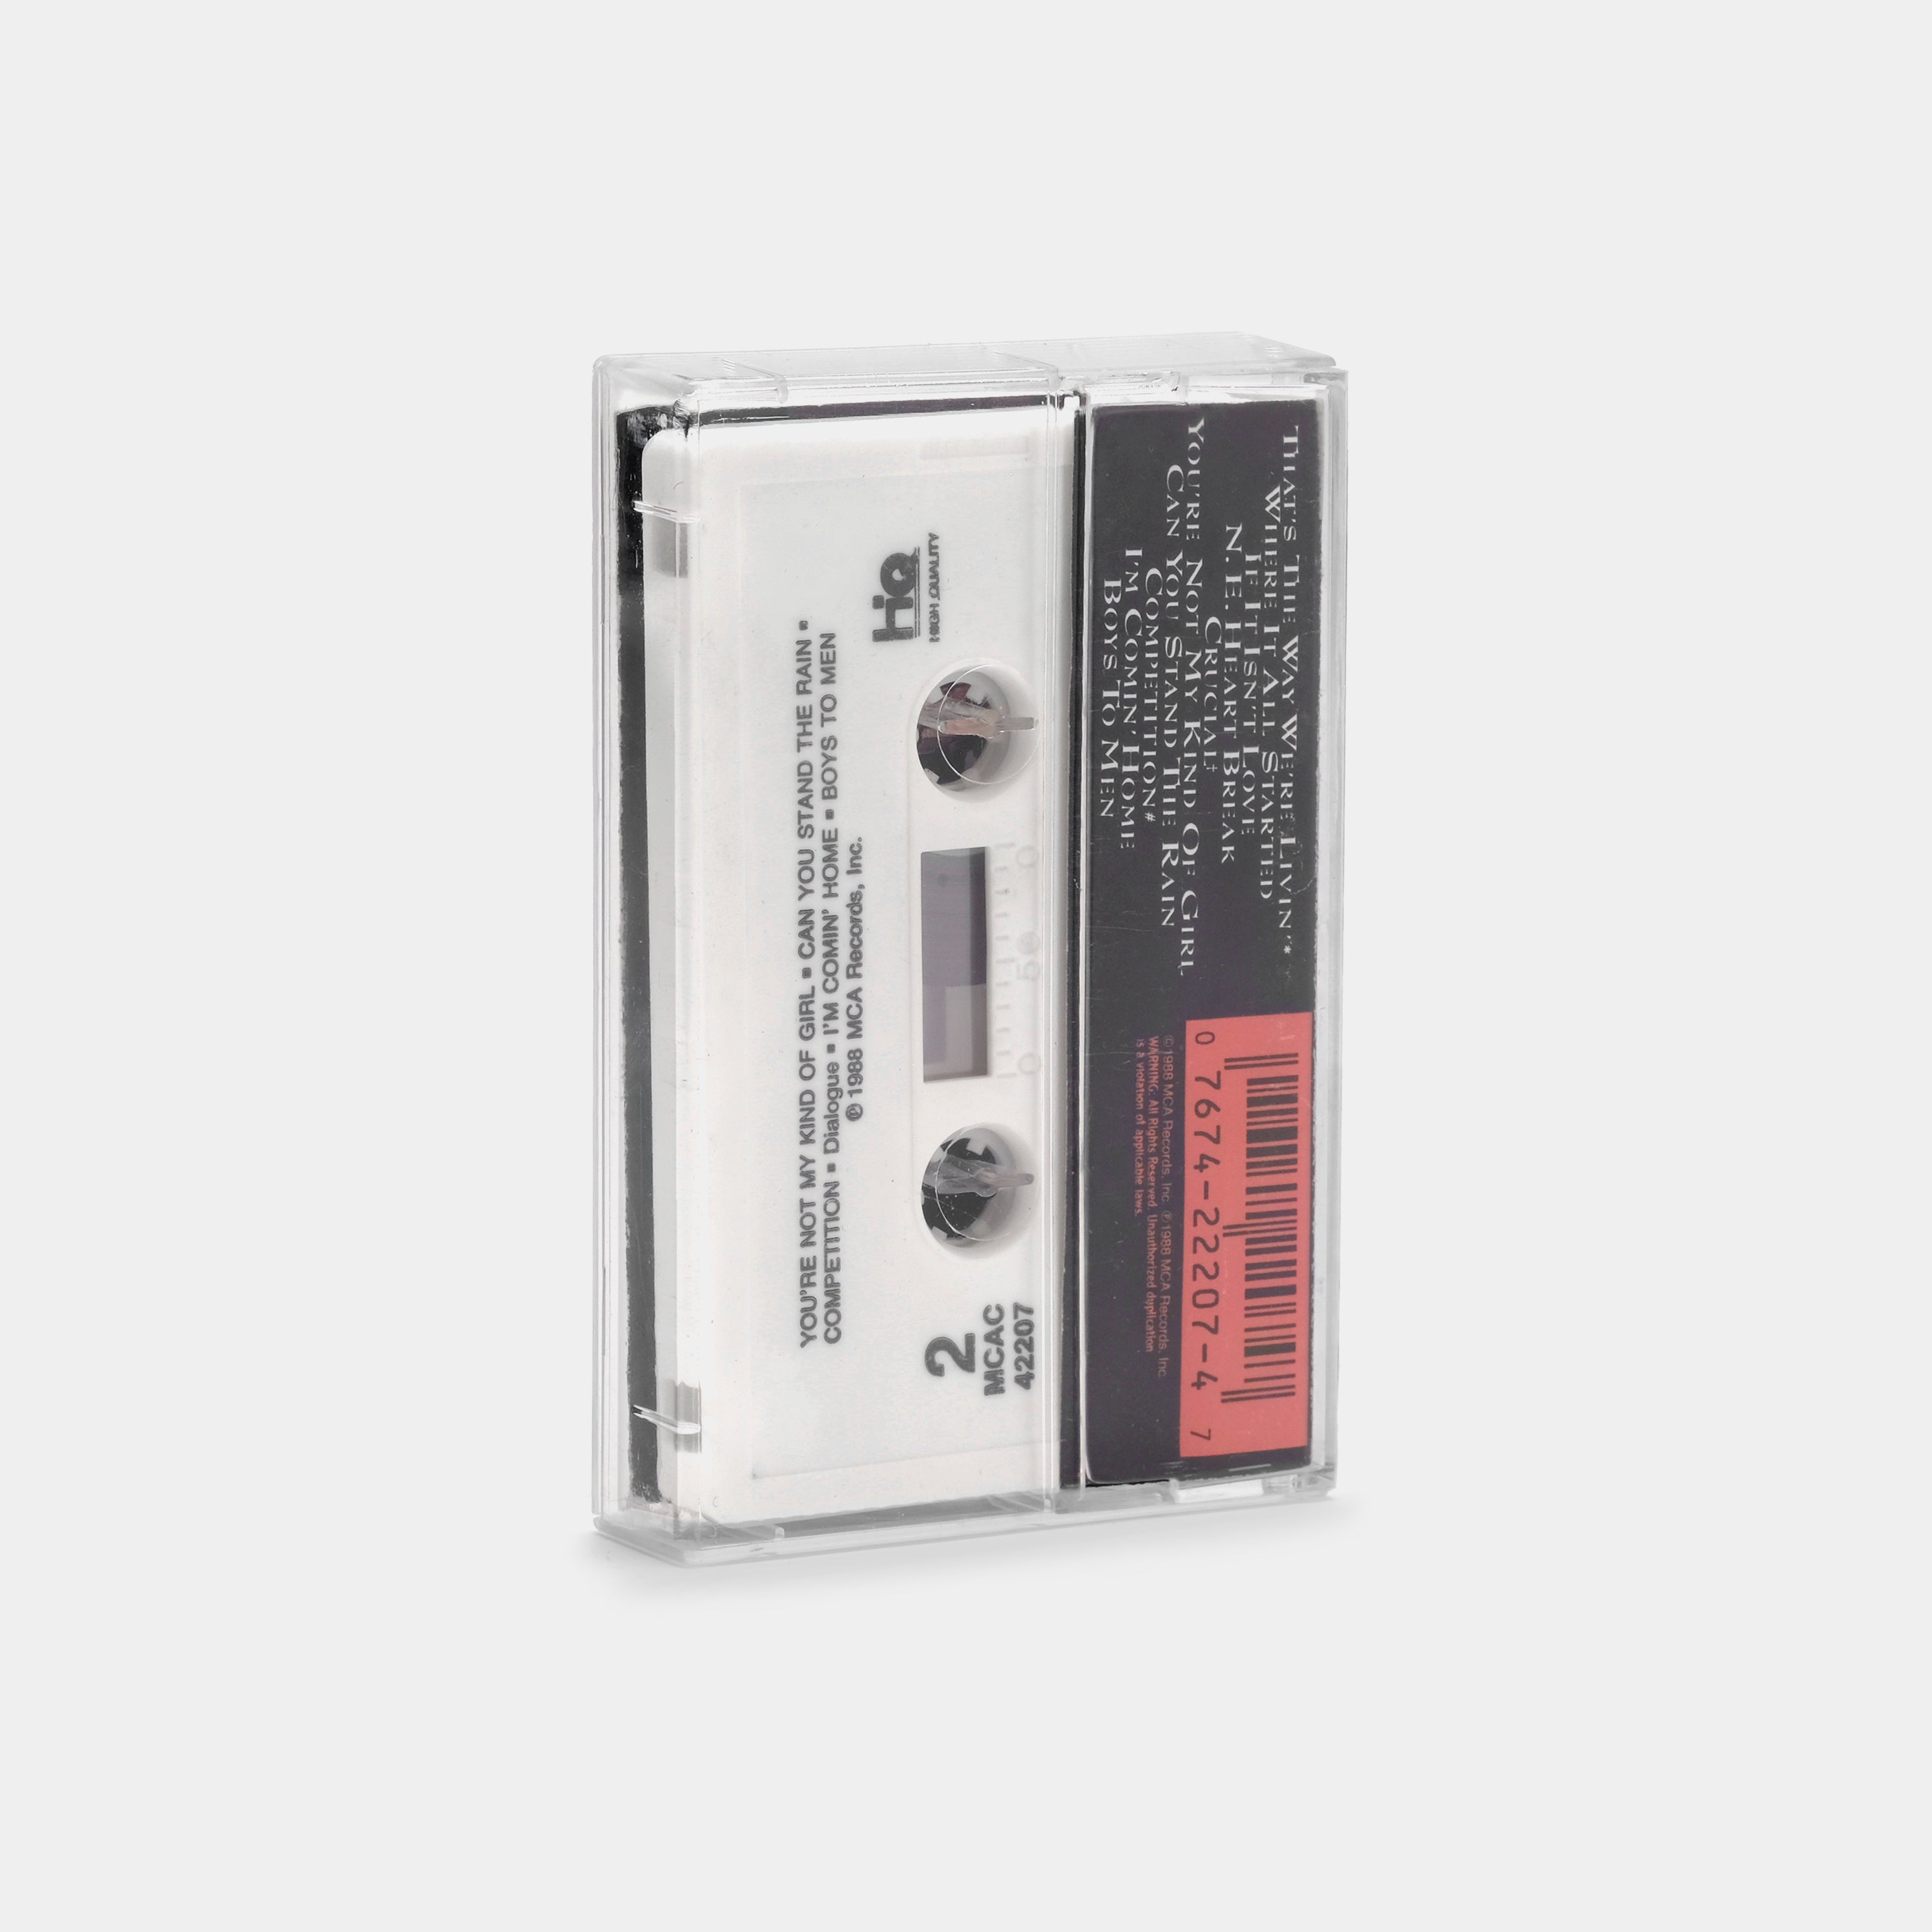 New Edition - Heart Break Cassette Tape